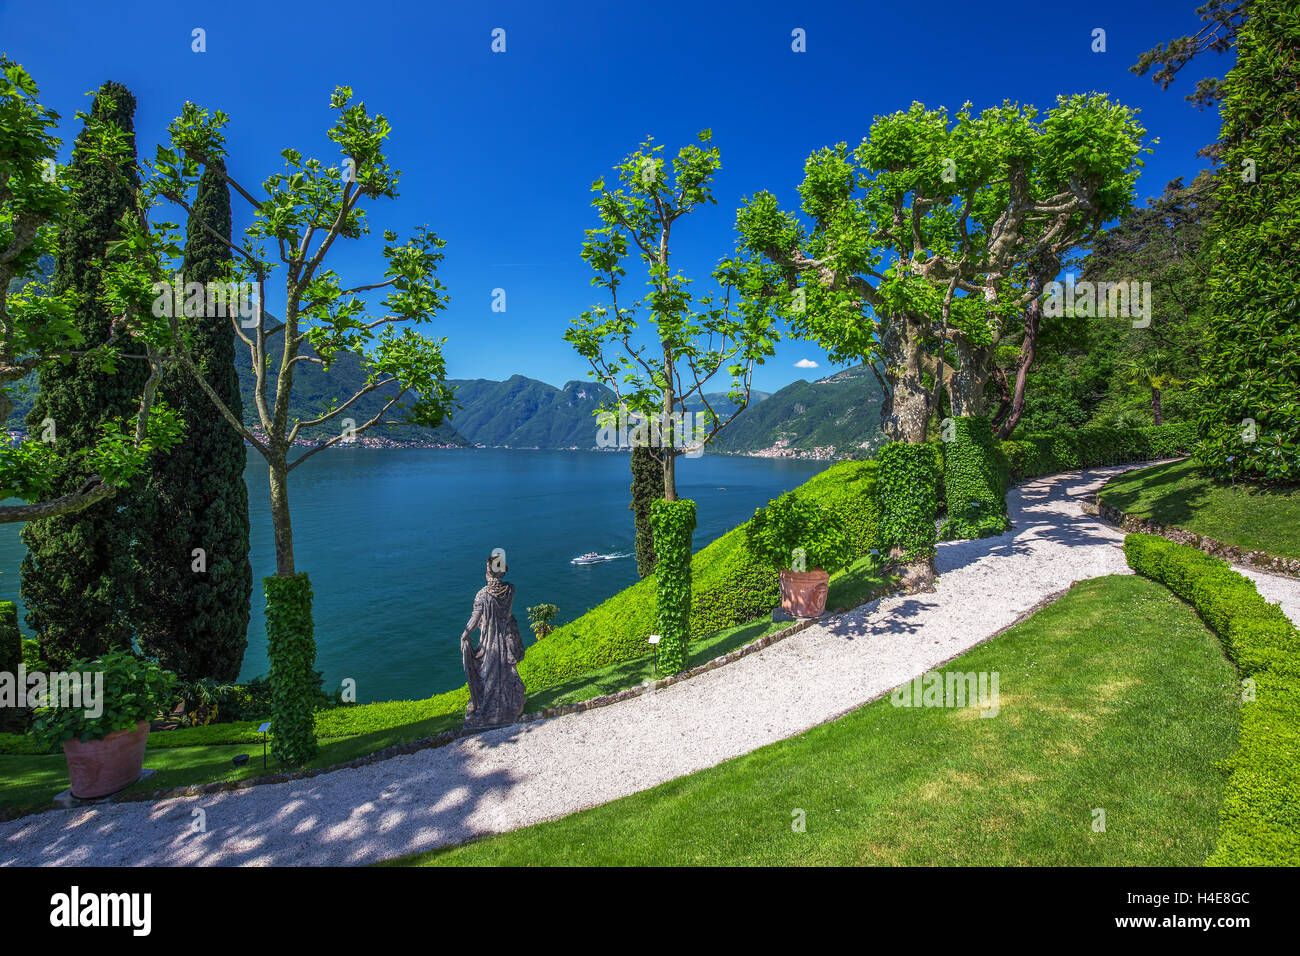 VILLA BALBIANELLO, Italia - 17 Maggio 2015 - Una bella vista del lago di Como e delle Alpi da Villa Balbianello, Italia. La villa è stata utilizzata per Foto Stock